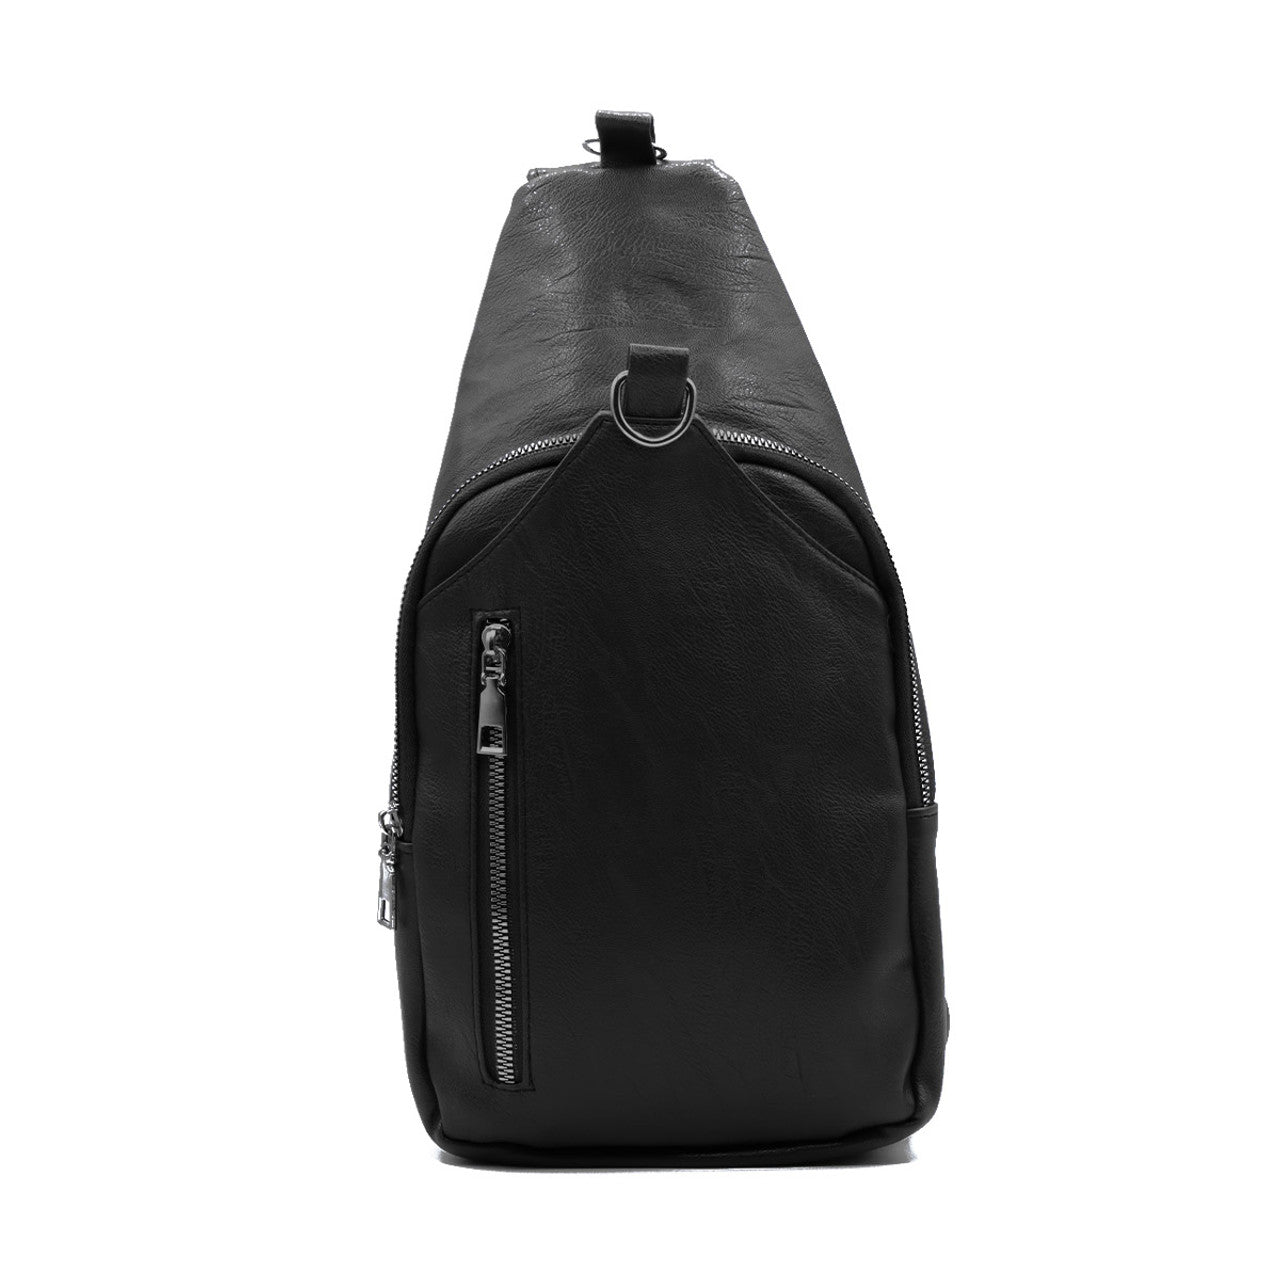 Backpack Crossbody Sling Bag Chest Shoulder Vegan Leather Travel